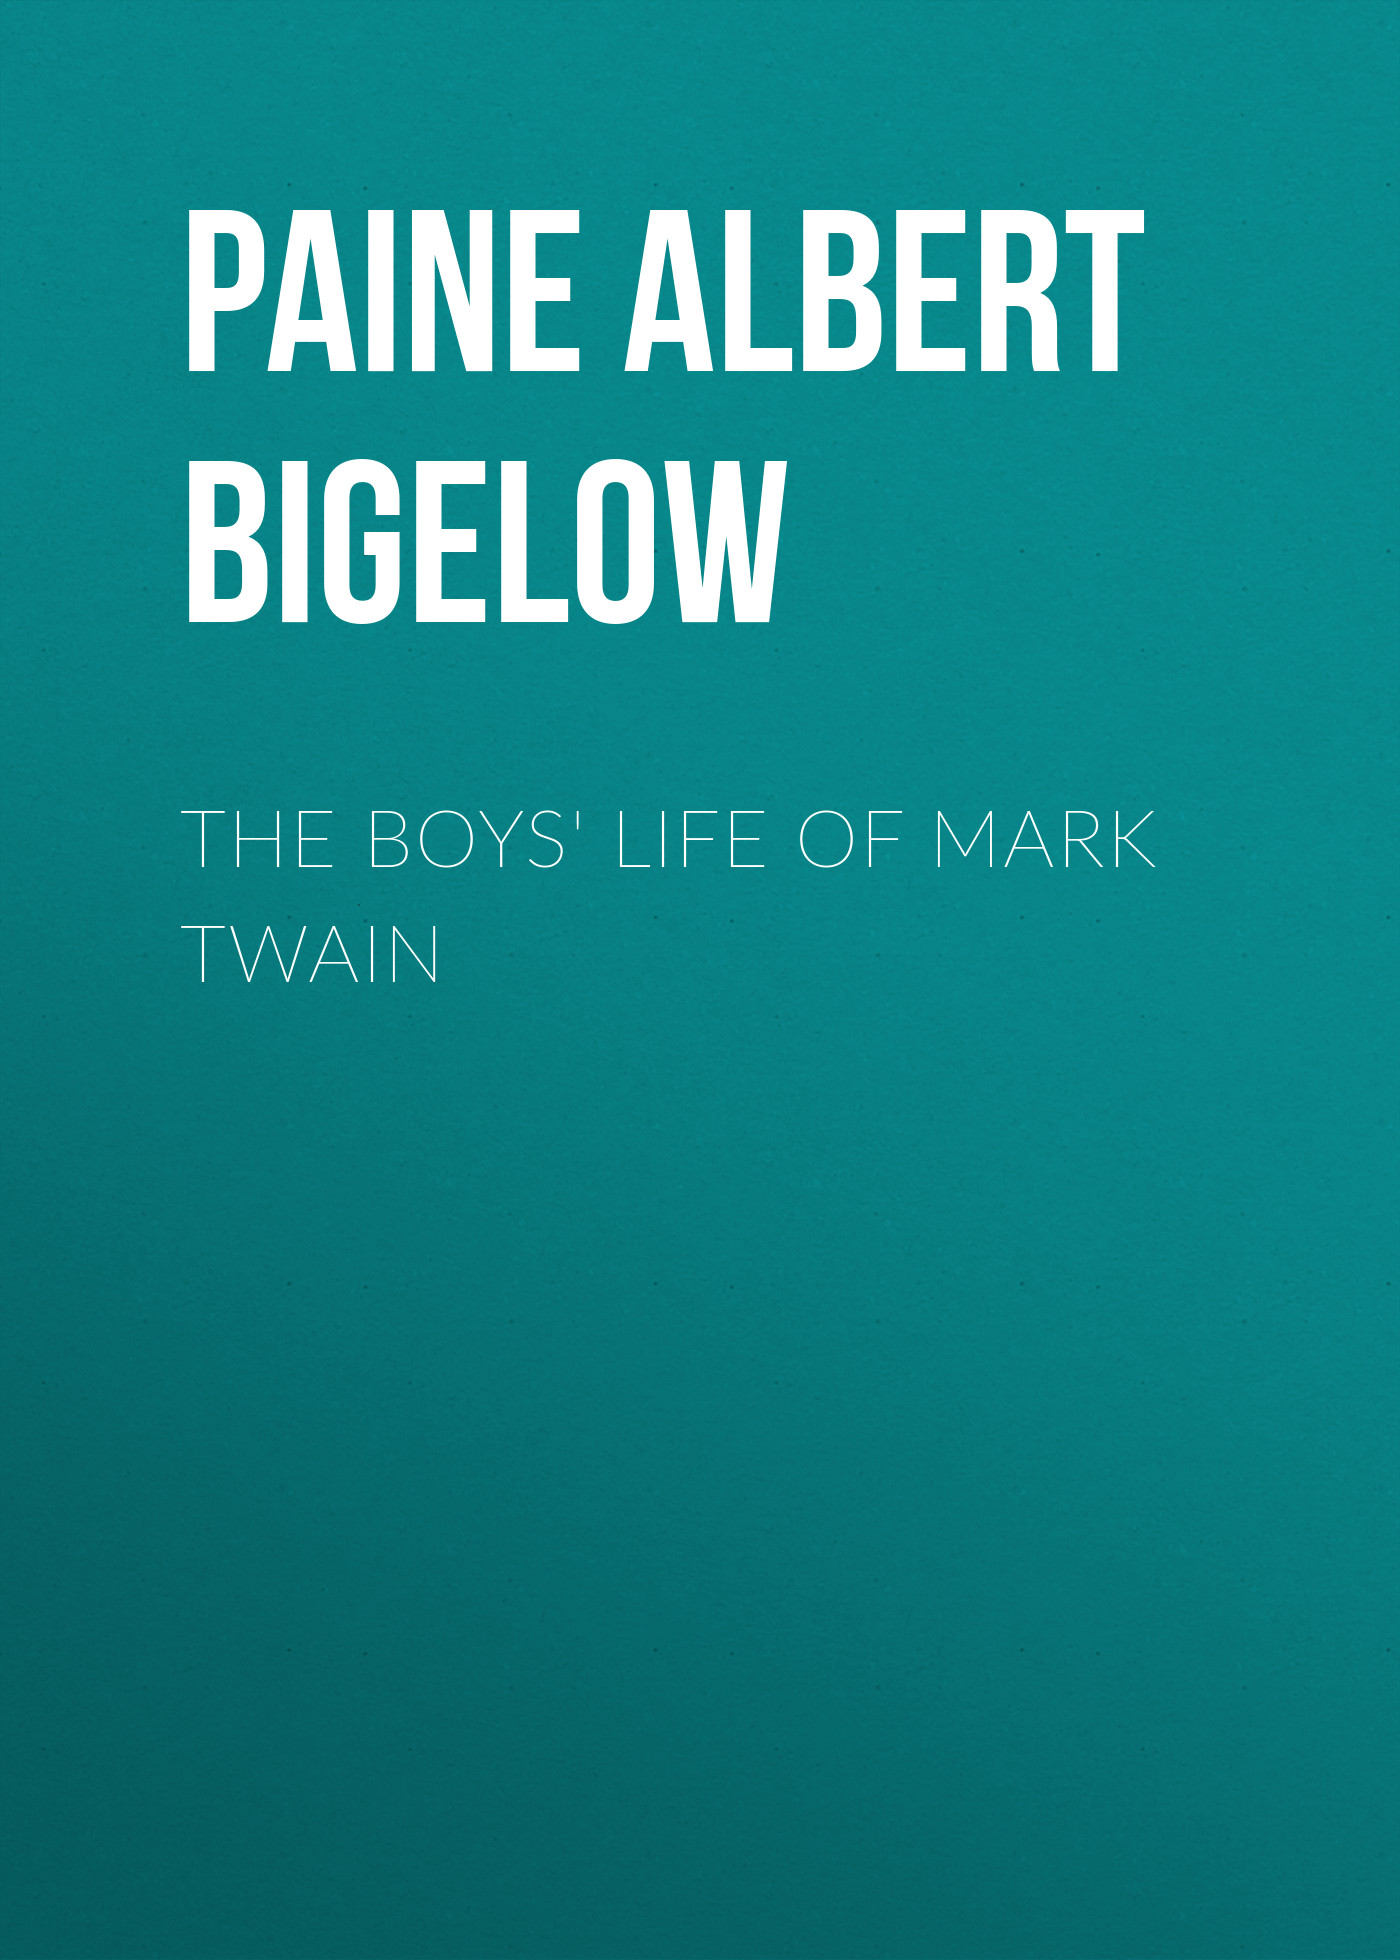 Книга The Boys' Life of Mark Twain из серии , созданная Albert Paine, может относится к жанру Биографии и Мемуары, Зарубежная старинная литература. Стоимость электронной книги The Boys' Life of Mark Twain с идентификатором 34838094 составляет 0 руб.